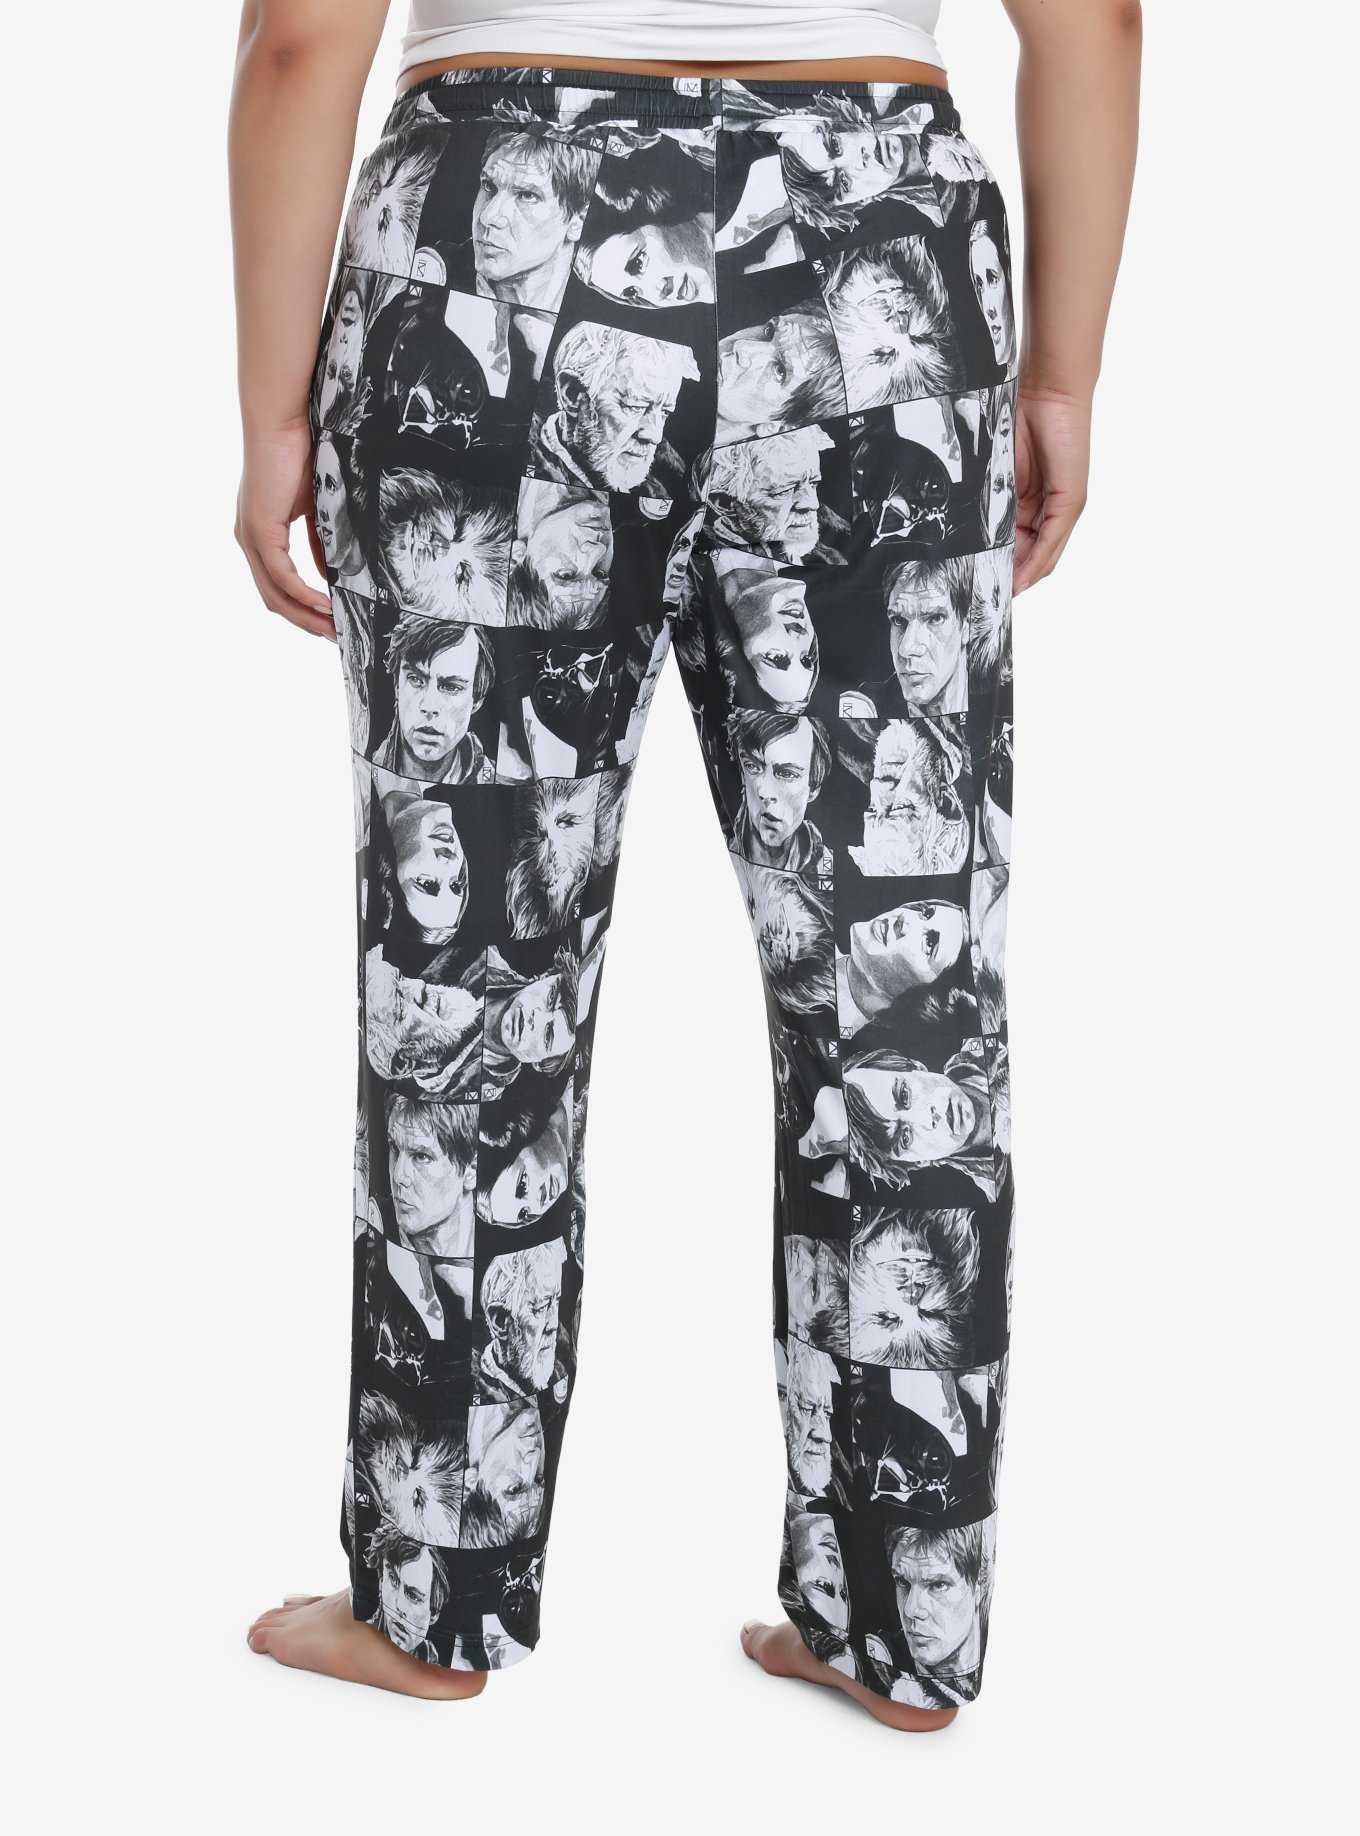 Star Wars Collage Girls Pajama Pants Plus Size, , hi-res